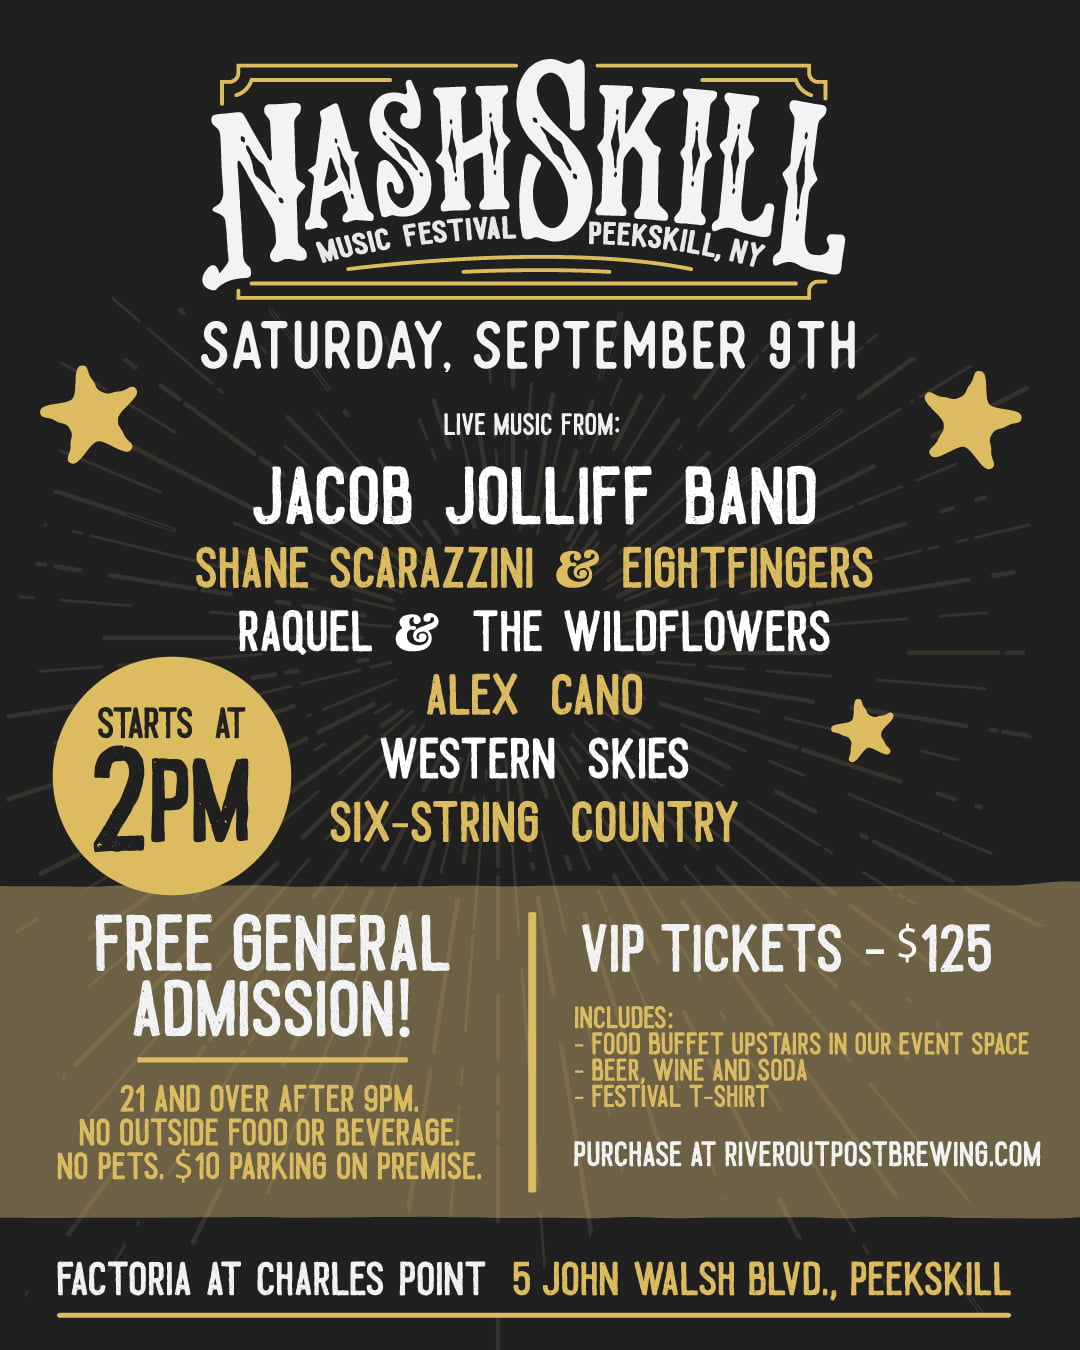 Flier for the NashSkill Music Festival at River Outpost